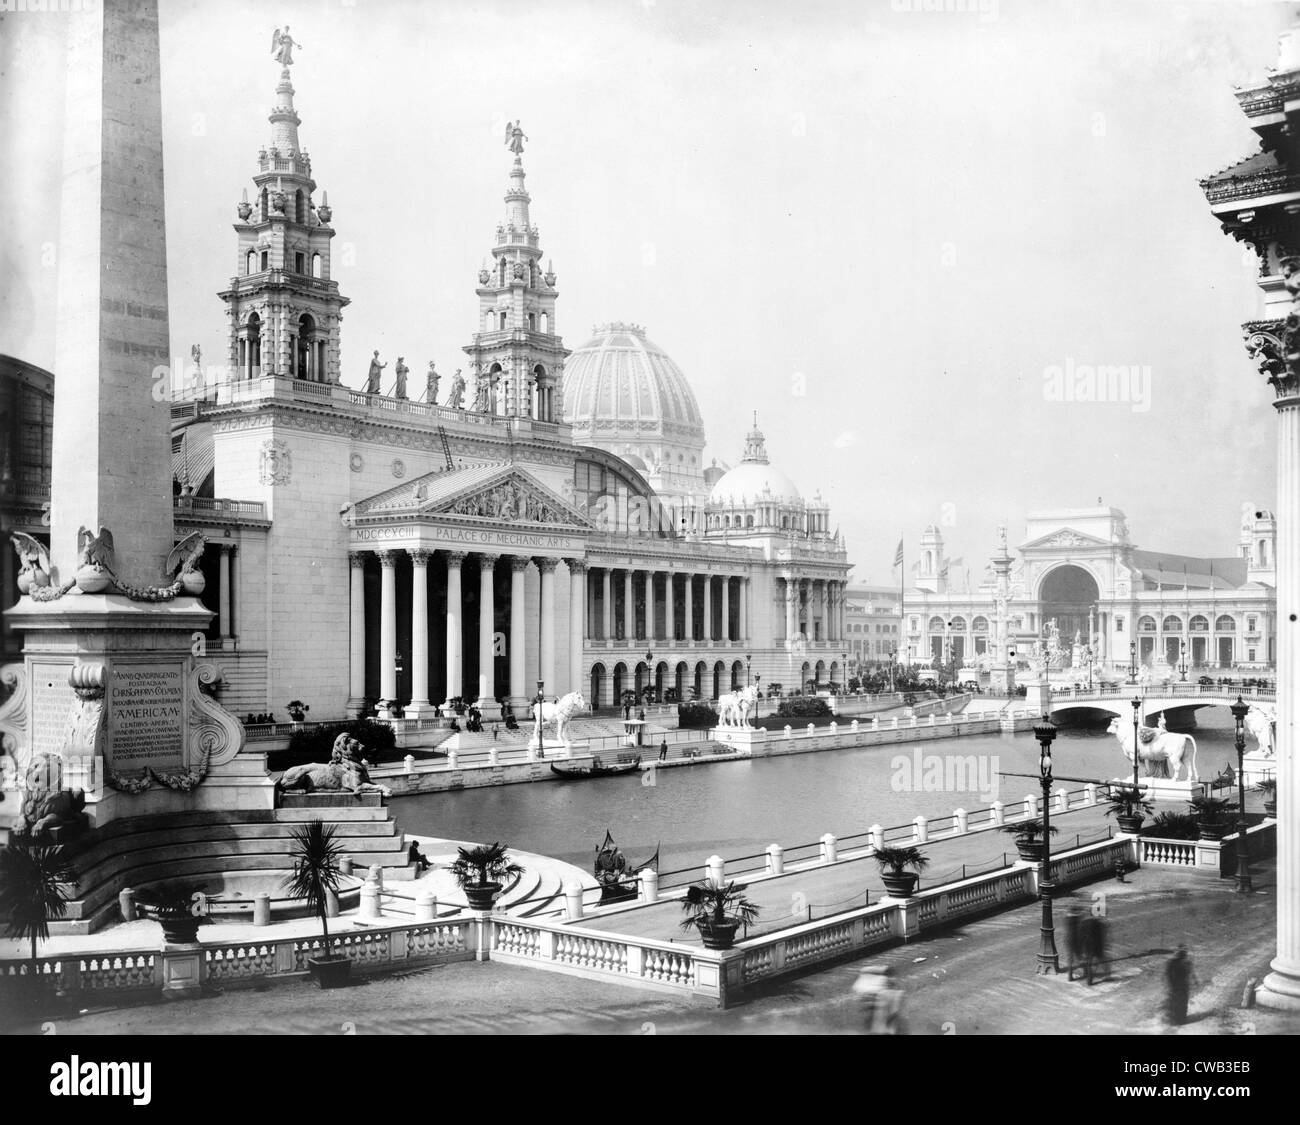 worlds-columbian-exposition-chicago-illinois-palais-des-arts-mecaniques-et-lagon-photo-par-frances-benjamin-johnston-1892-cwb3eb.jpg